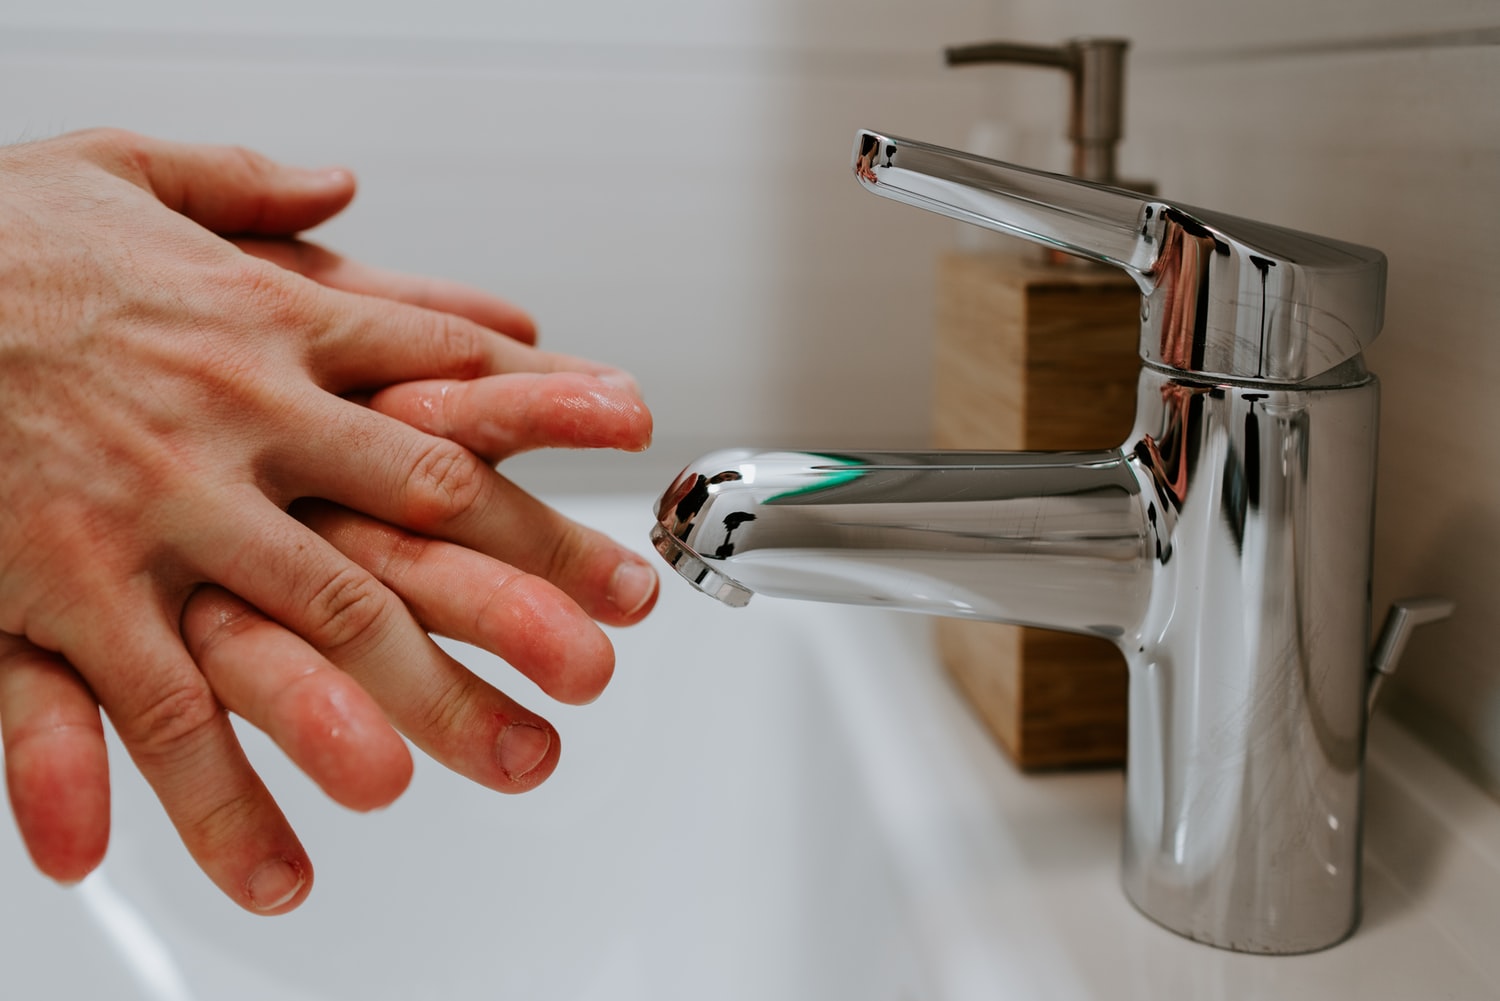 A higienização frequente das mãos com água e sabão ou álcool gel é só uma das medidas preventivas para evitar o avanço do coronavírus, COVID-19, no país